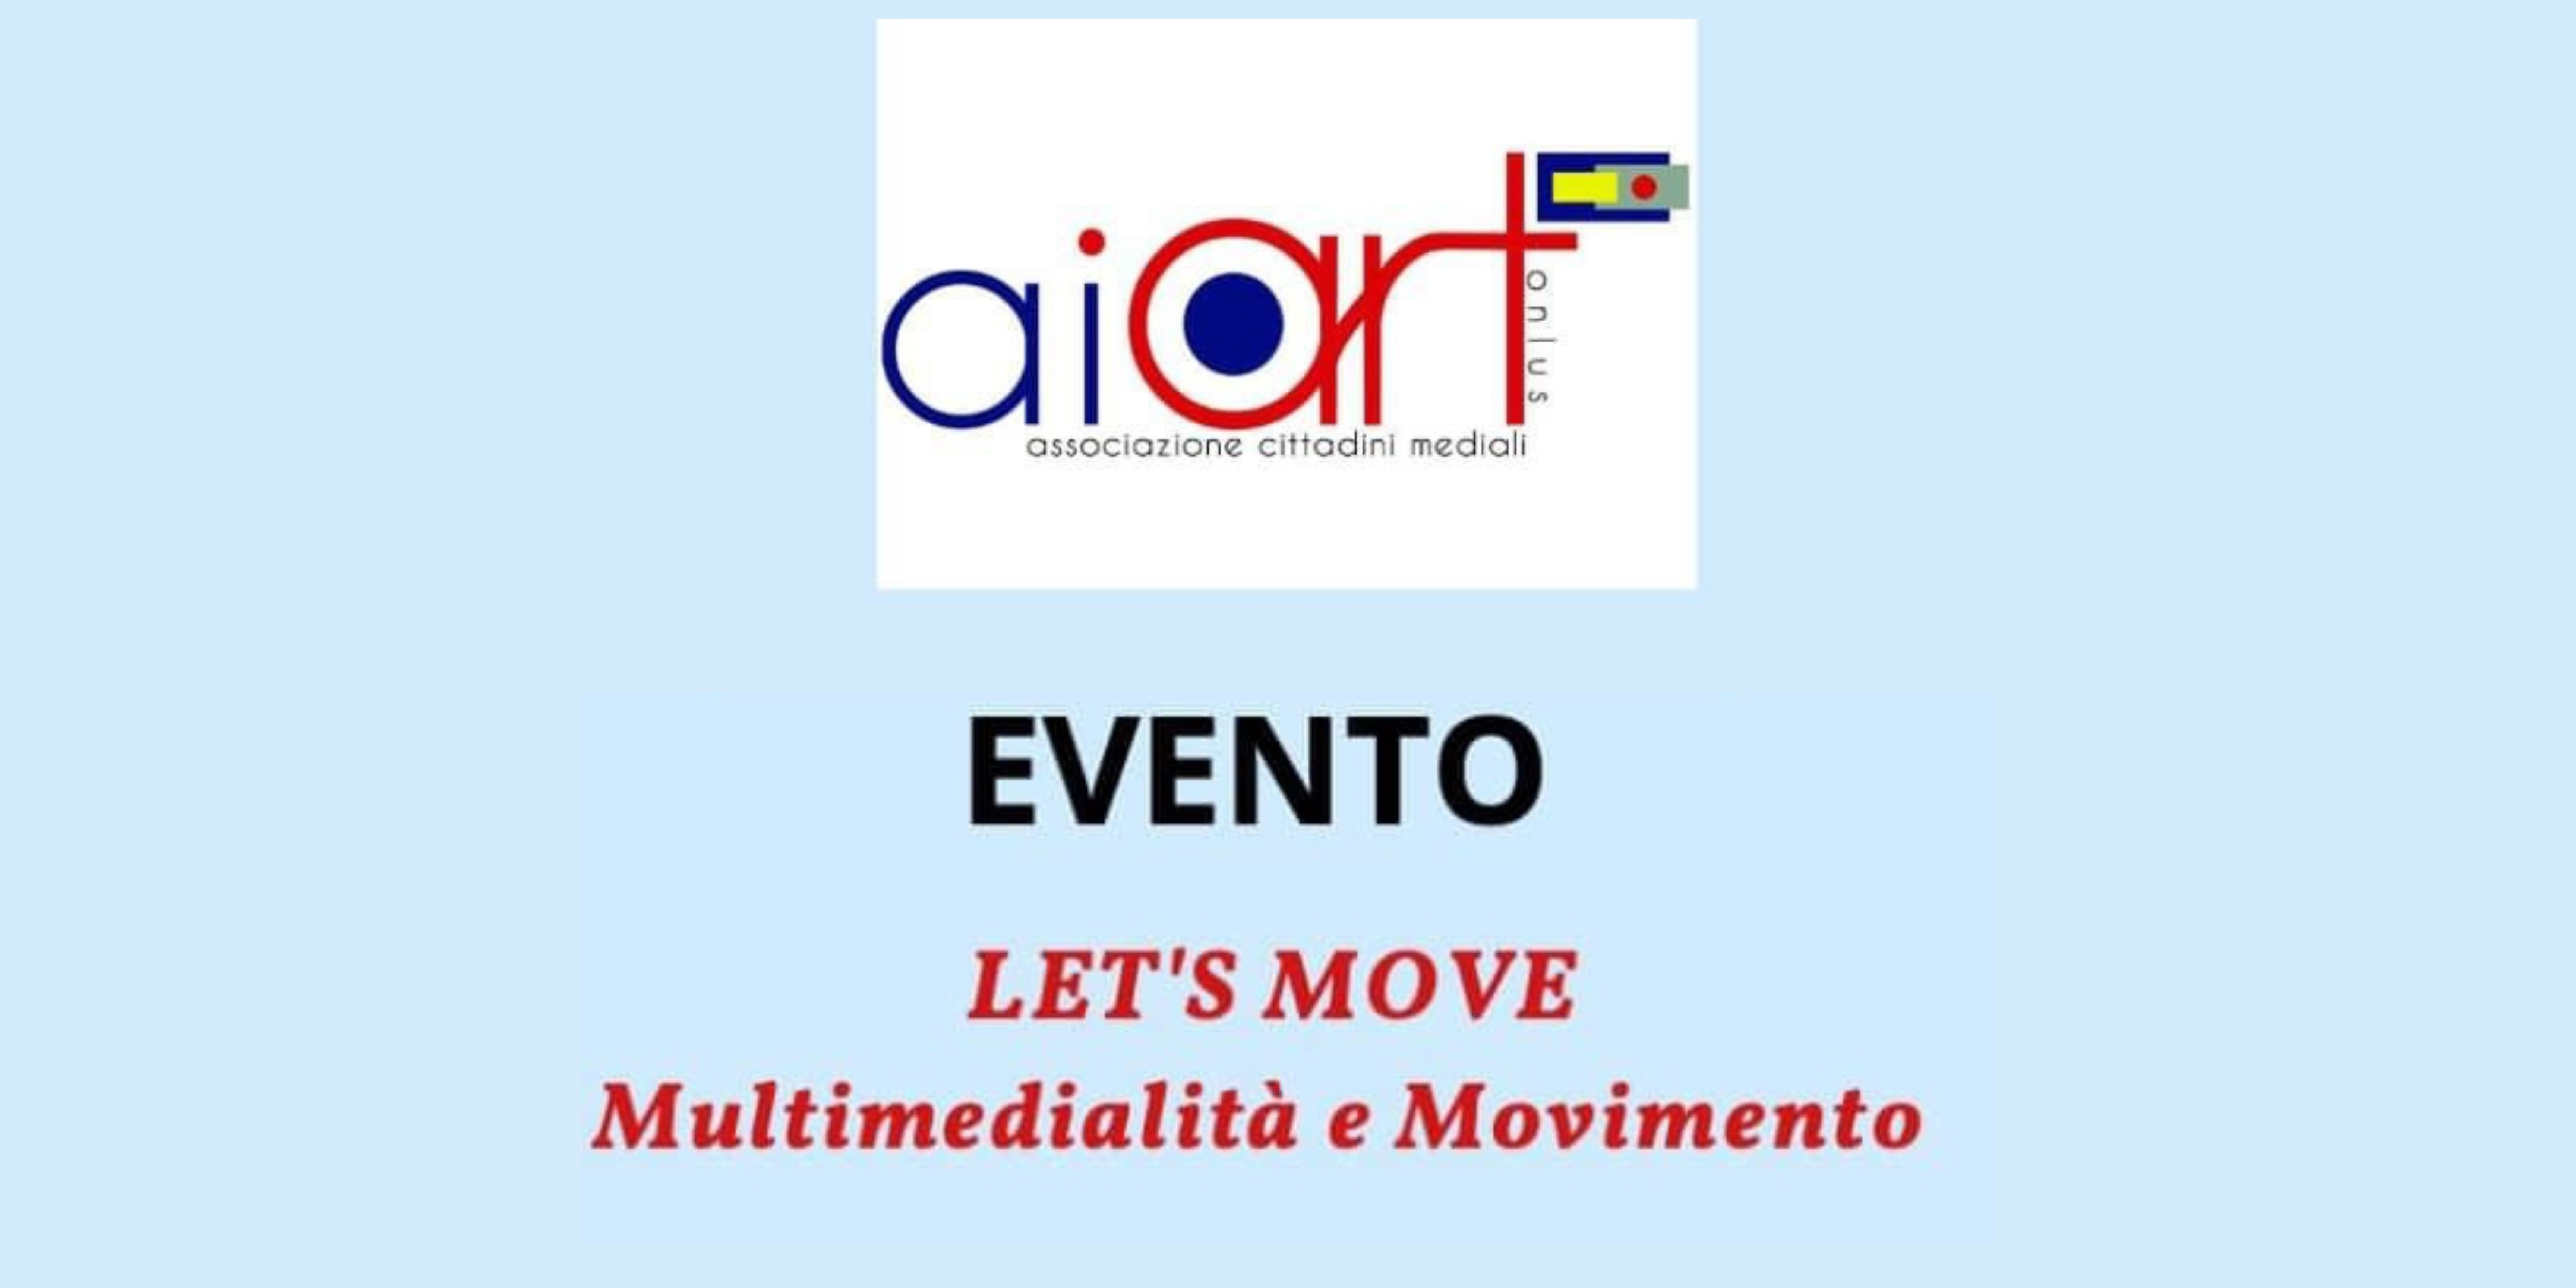 Tecnologie, corpo e movimento. Intervento CREMIT presso Aiart-Varese